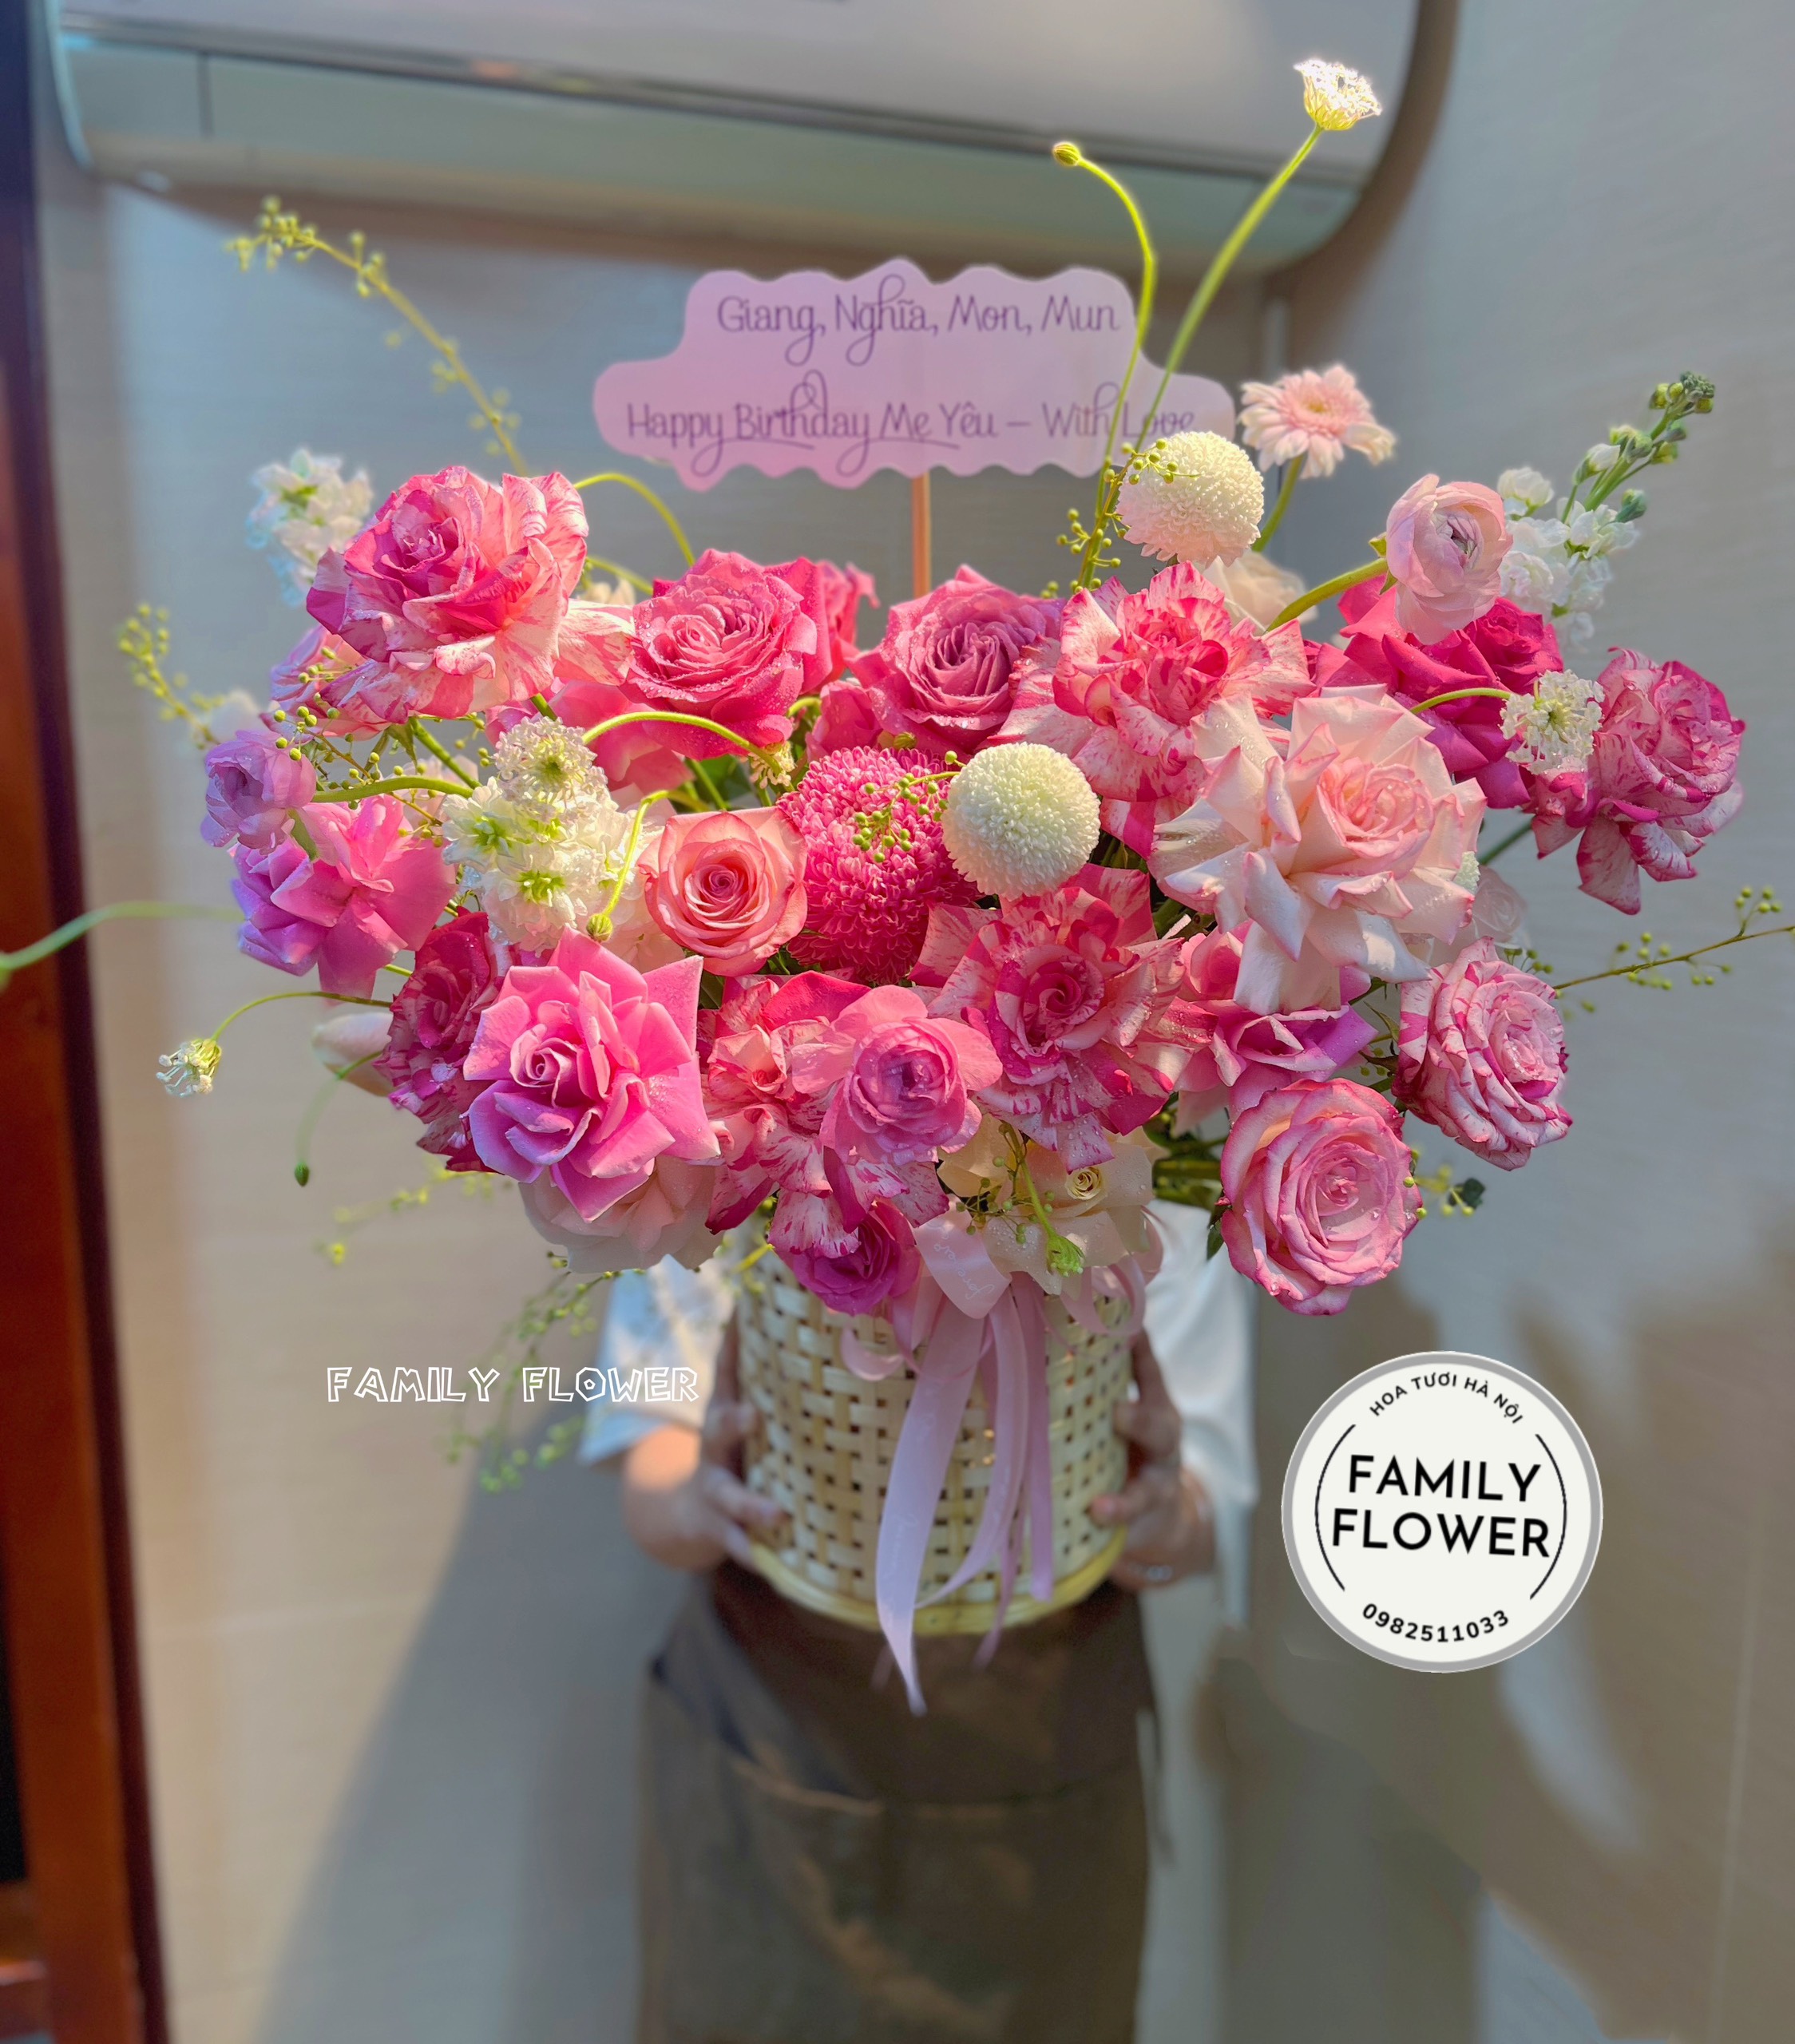 Lẵng hoa tặng chúc mừng sinh nhật mẹ tại Ba Đình Hà Nội ! Mua hoa online tại Hà Nội